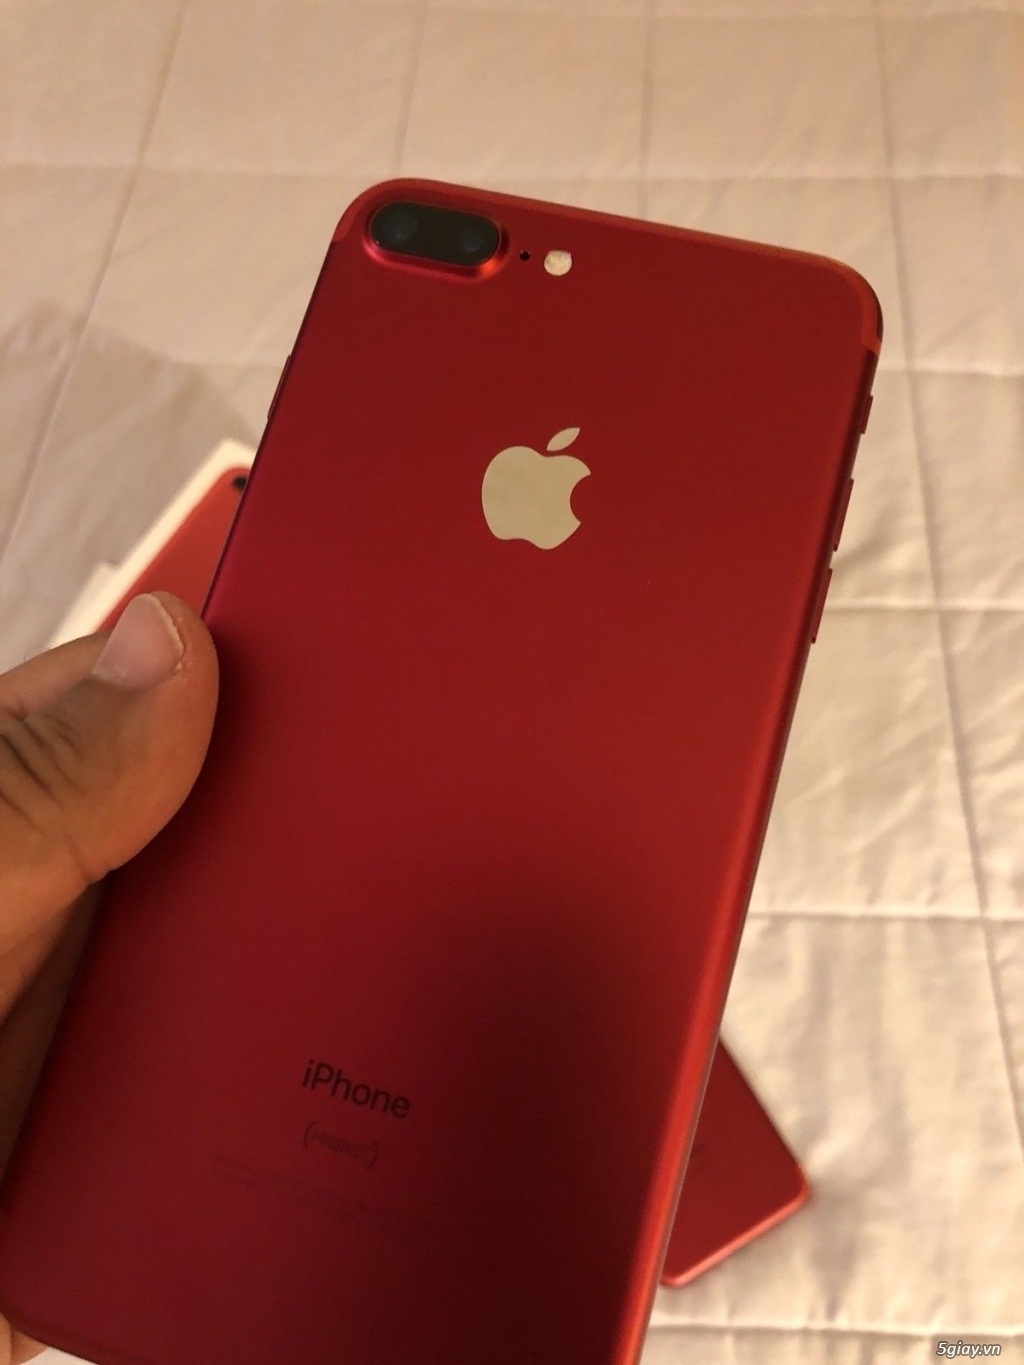 iPhone 7 Plus 128Gb Đỏ Quốc Tế, Bảo hành 11 tháng, 99%, chưa sửa chữa - 4